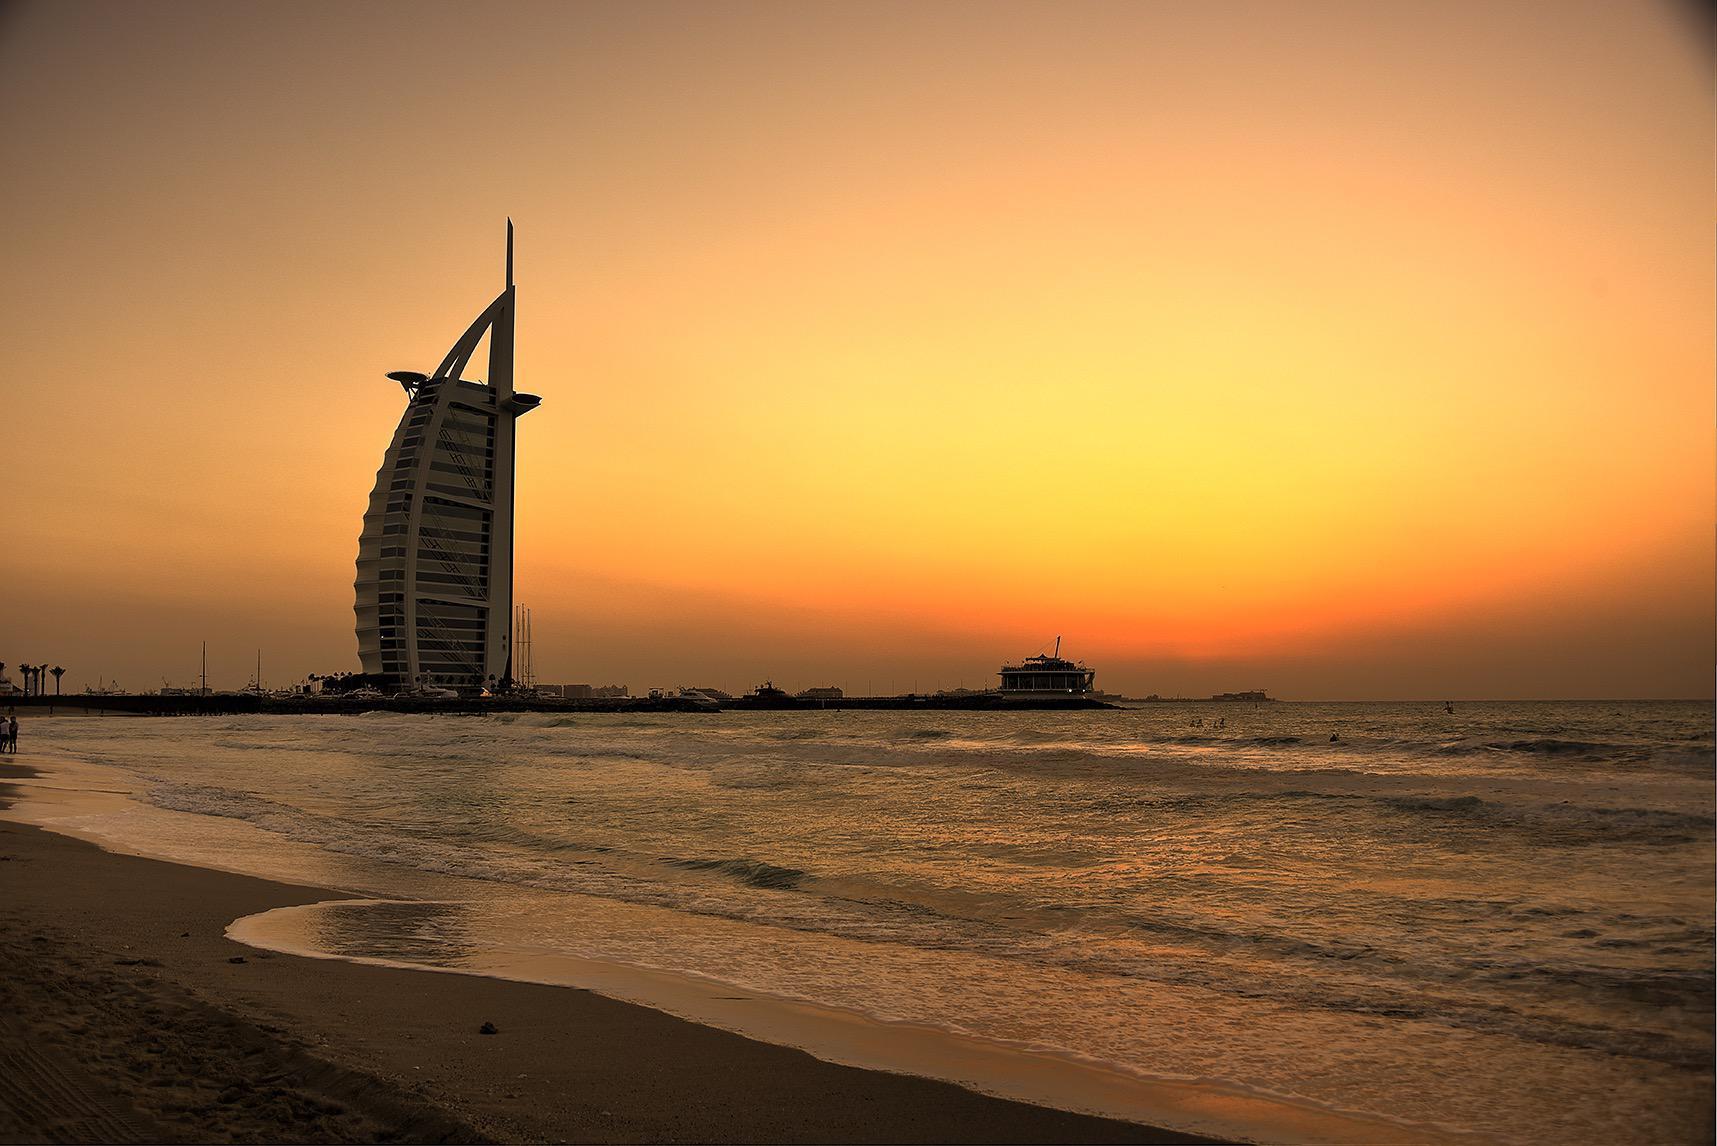 Dubai Sunset Wallpapers - Top Free Dubai Sunset Backgrounds ...